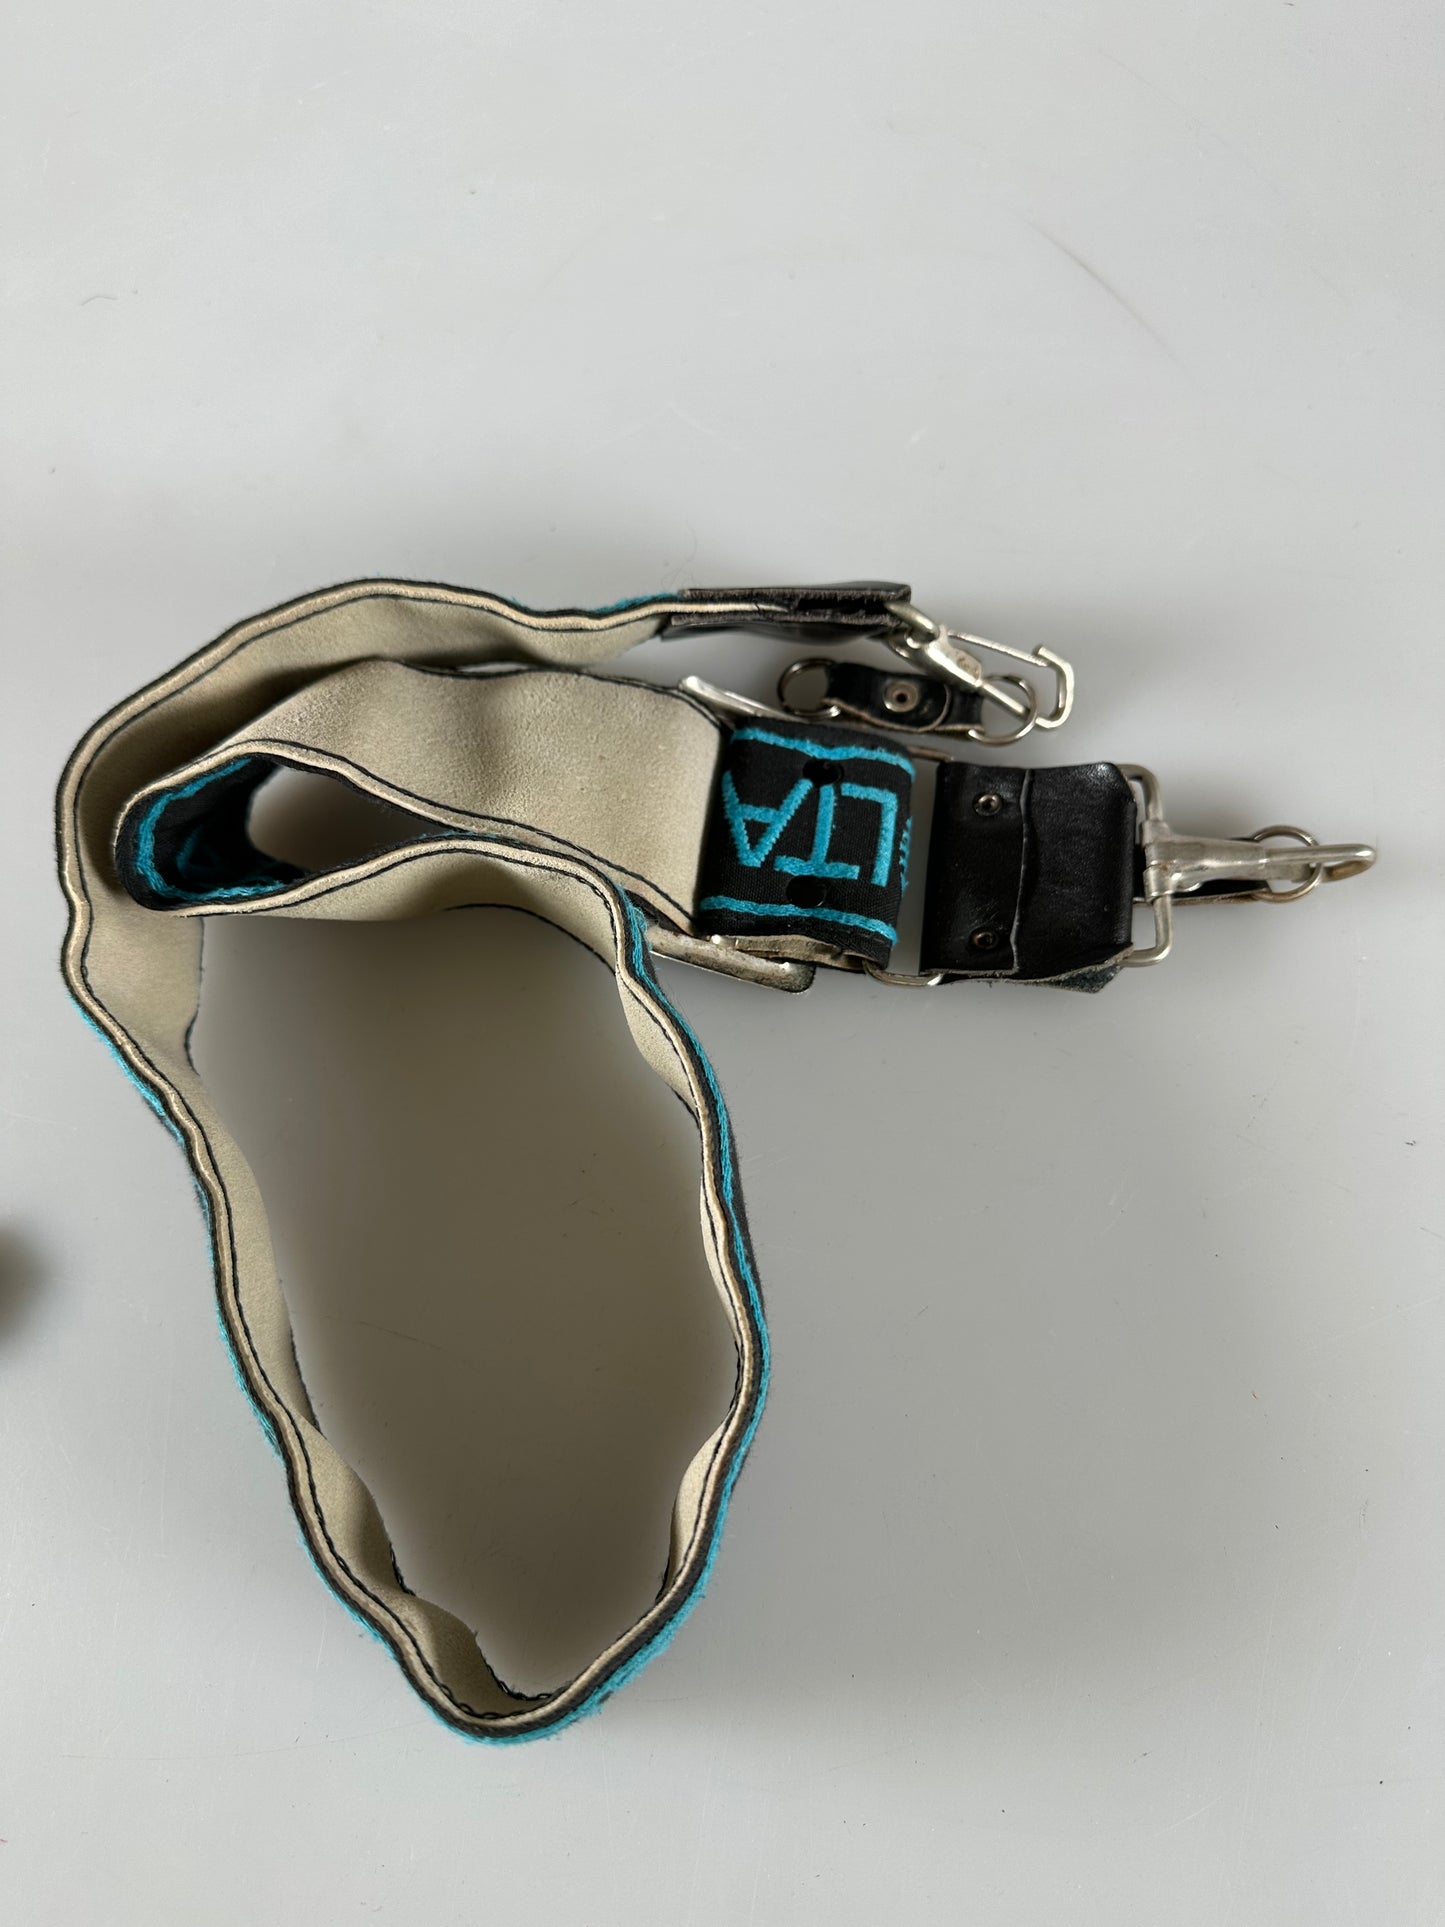 Minolta Vintage Neck Strap for SLR DSLR Cameras - Blue Black